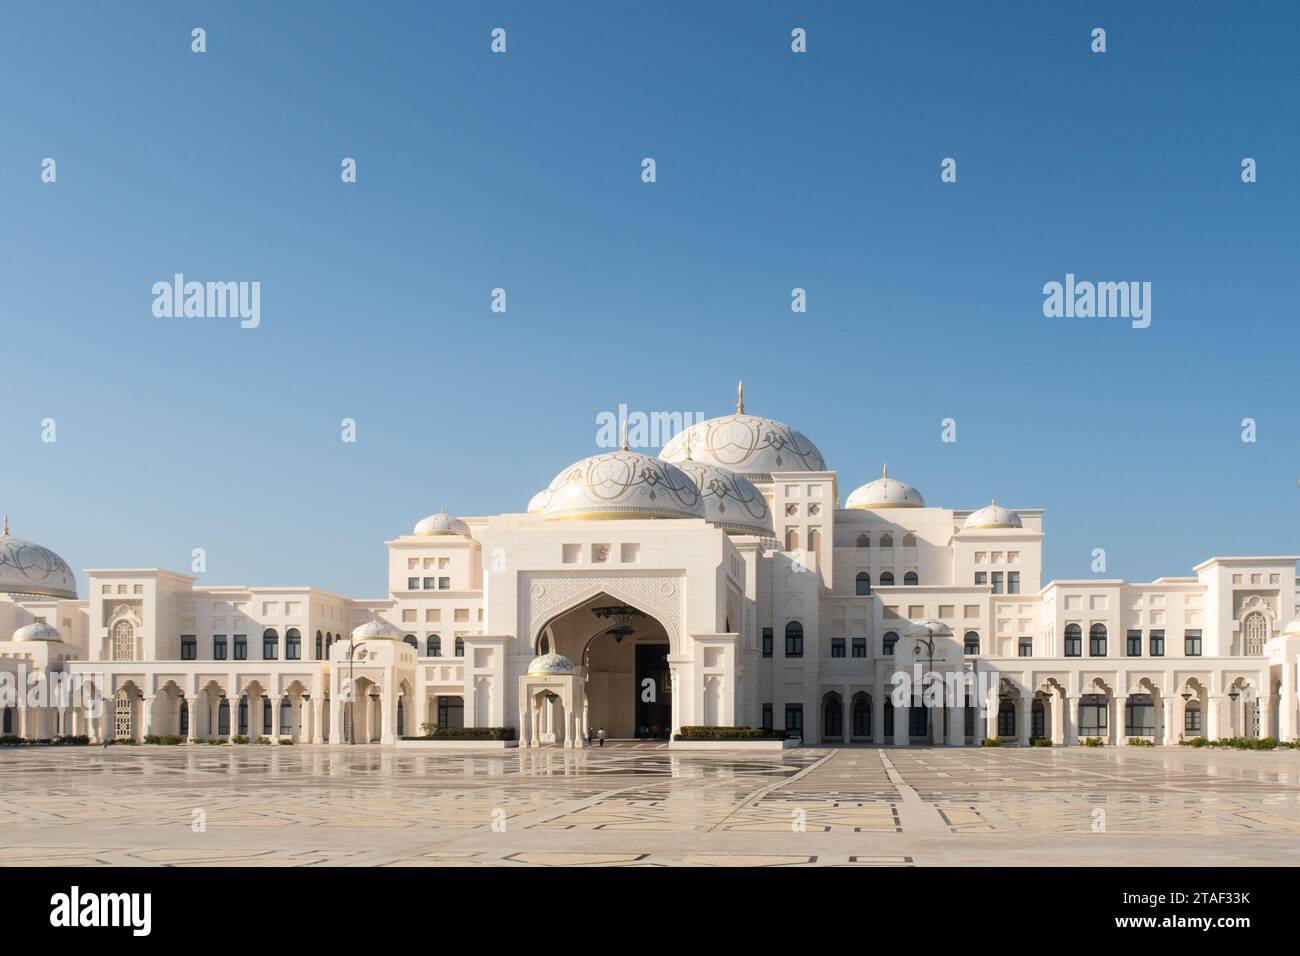 Abu Dhabi, VAE, 08.02.2020. Präsidentenpalast der VAE Qasr Al Watan, öffentlich zugänglich, Außenansicht vom Eingang. Stockfoto